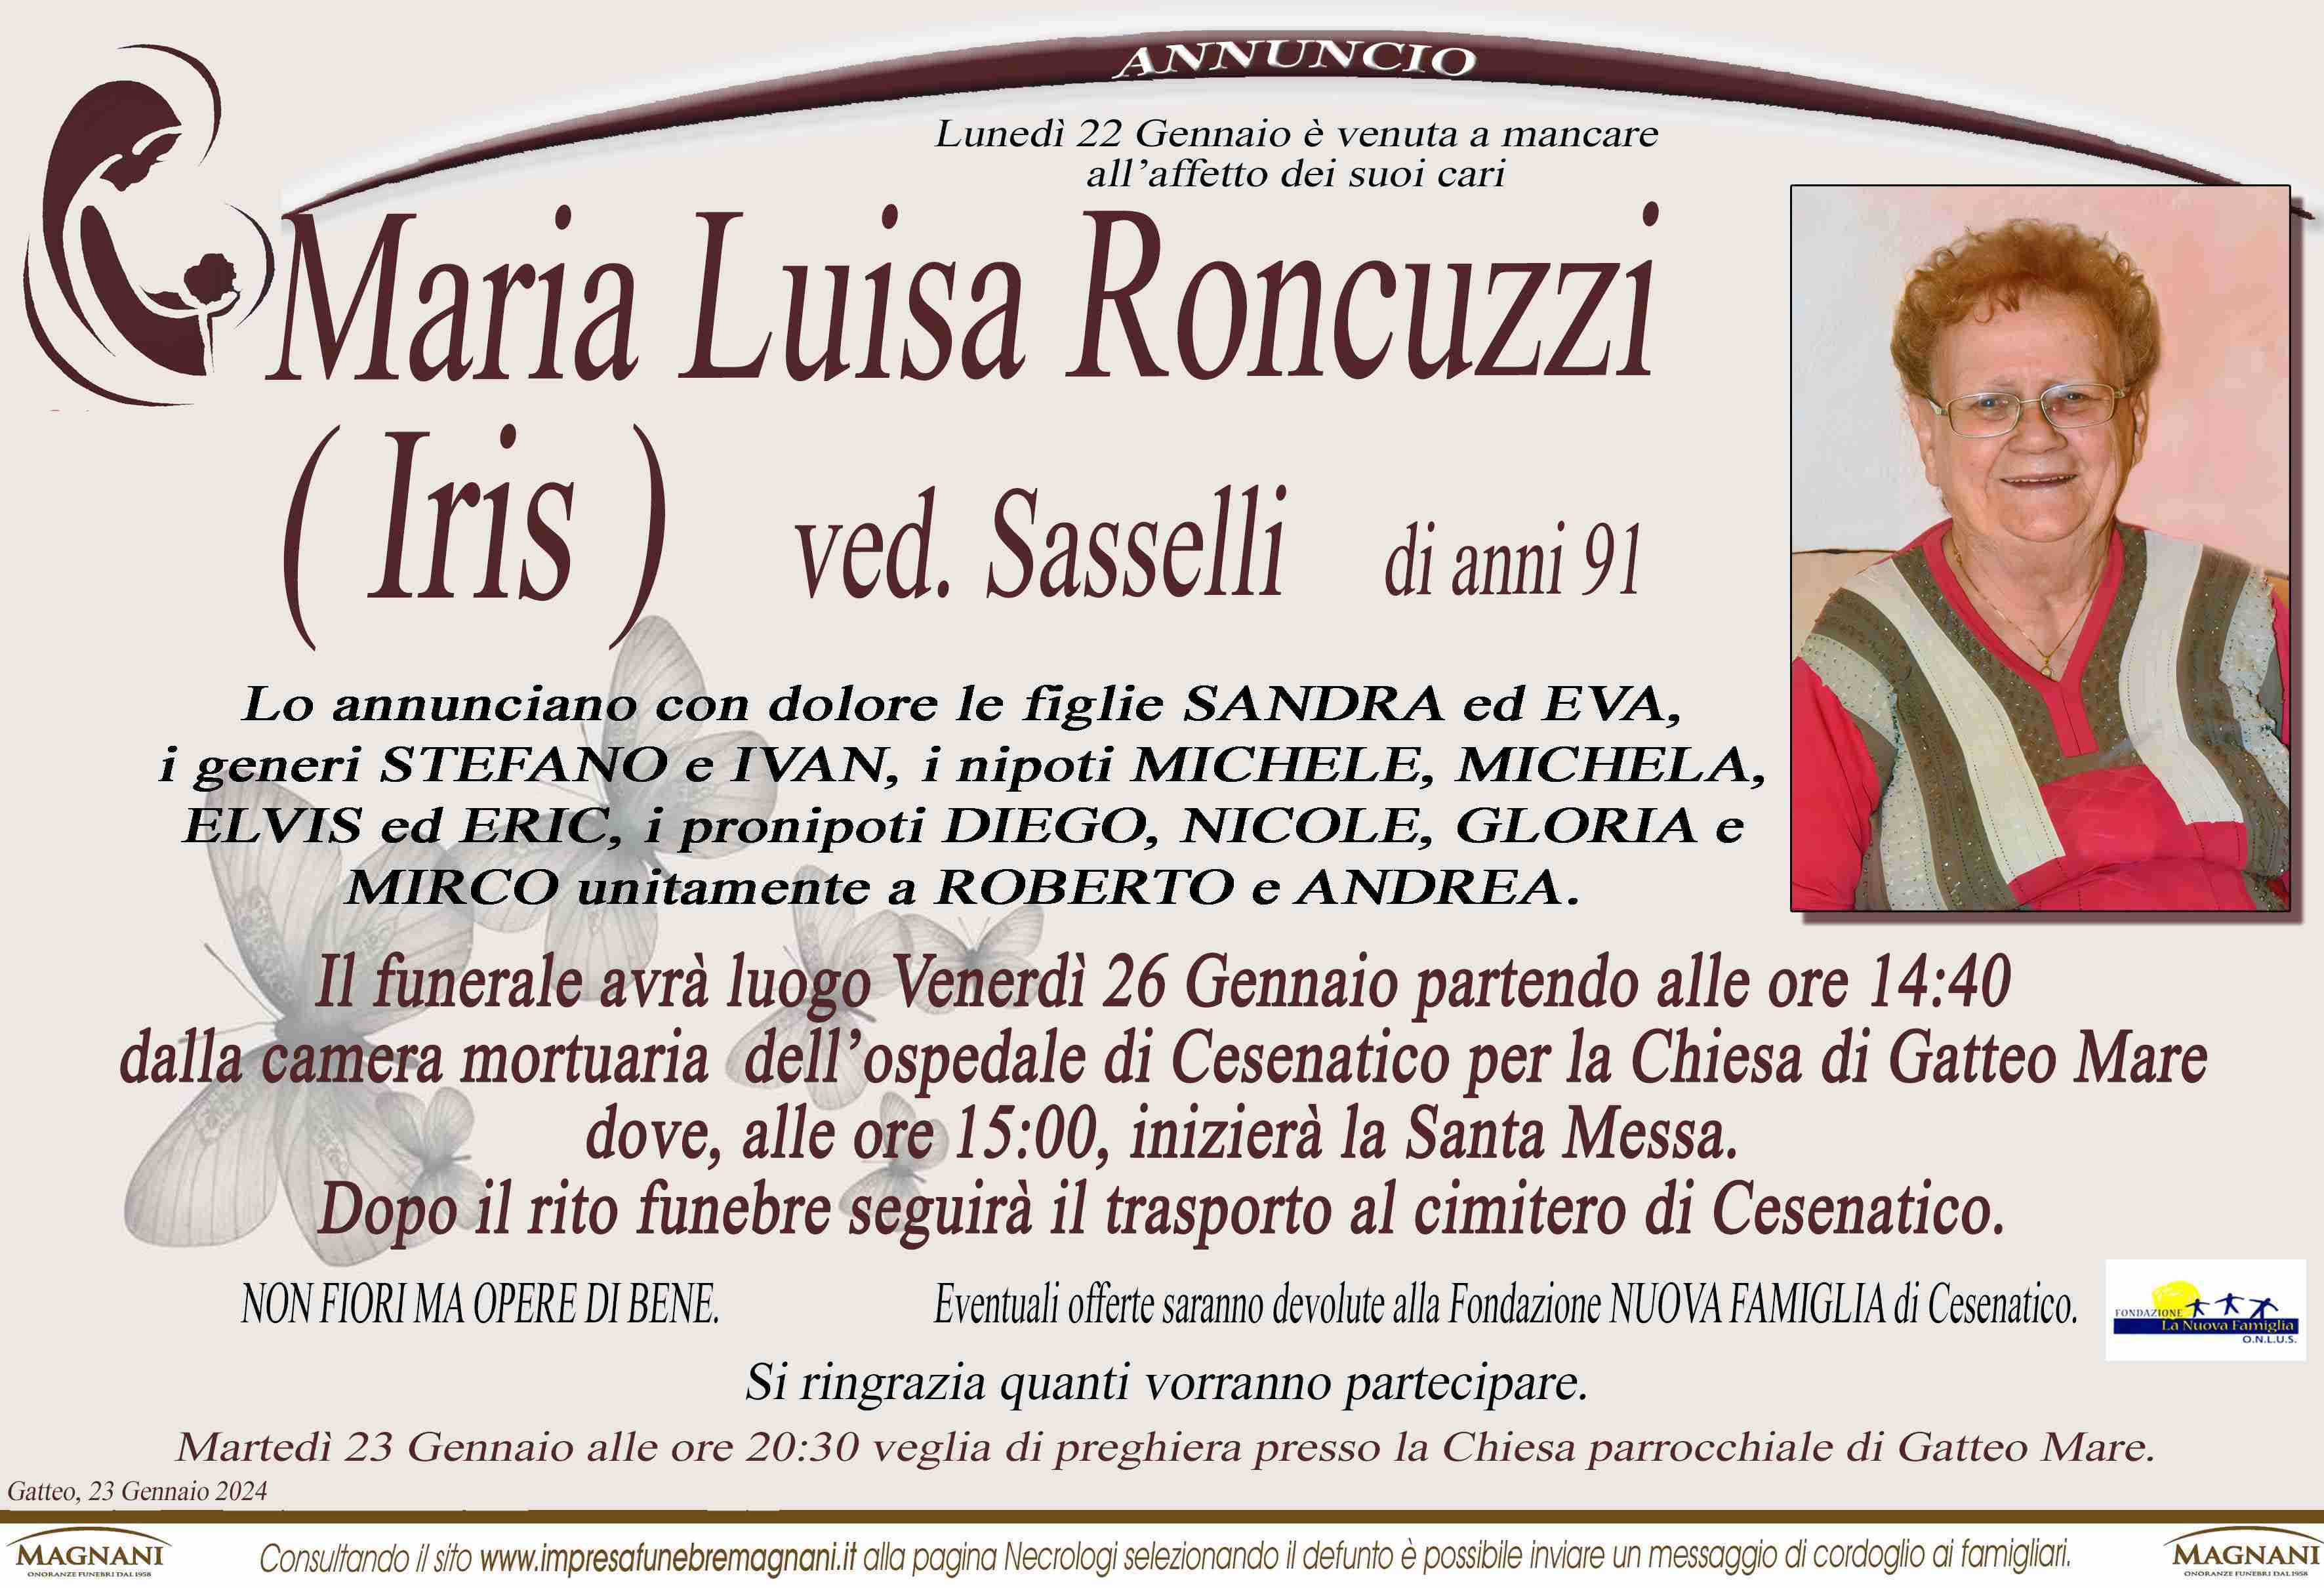 Roncuzzi Maria Luisa ( Iris )